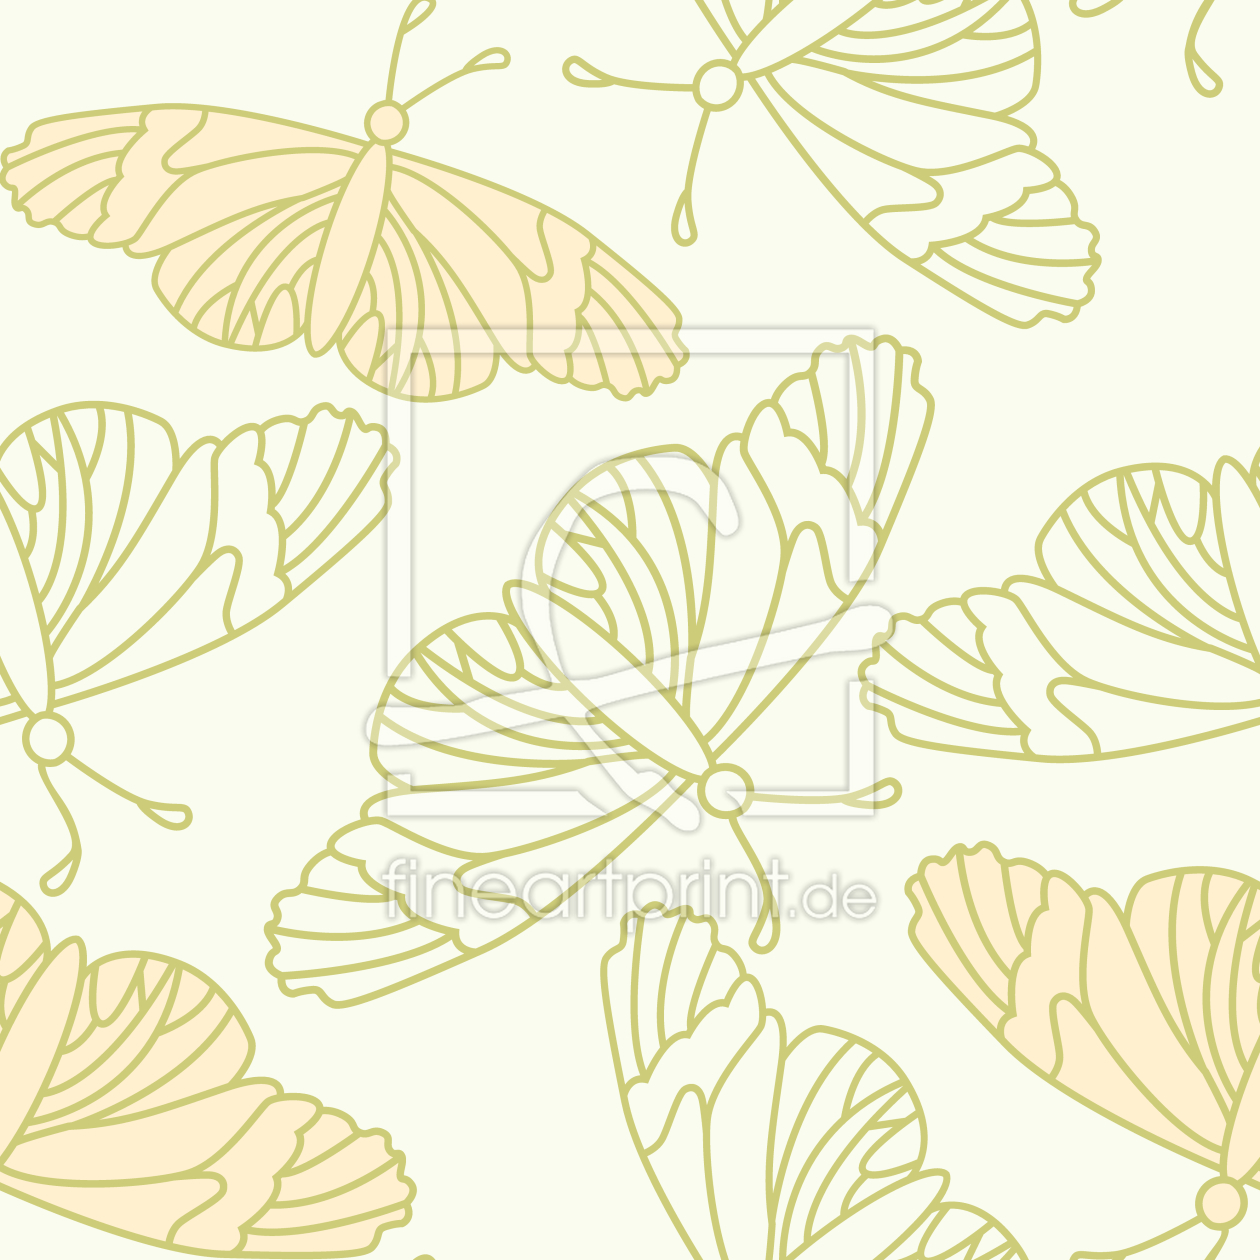 Bild-Nr.: 9012016 Zarte Schmetterlings Silhouetten erstellt von patterndesigns-com